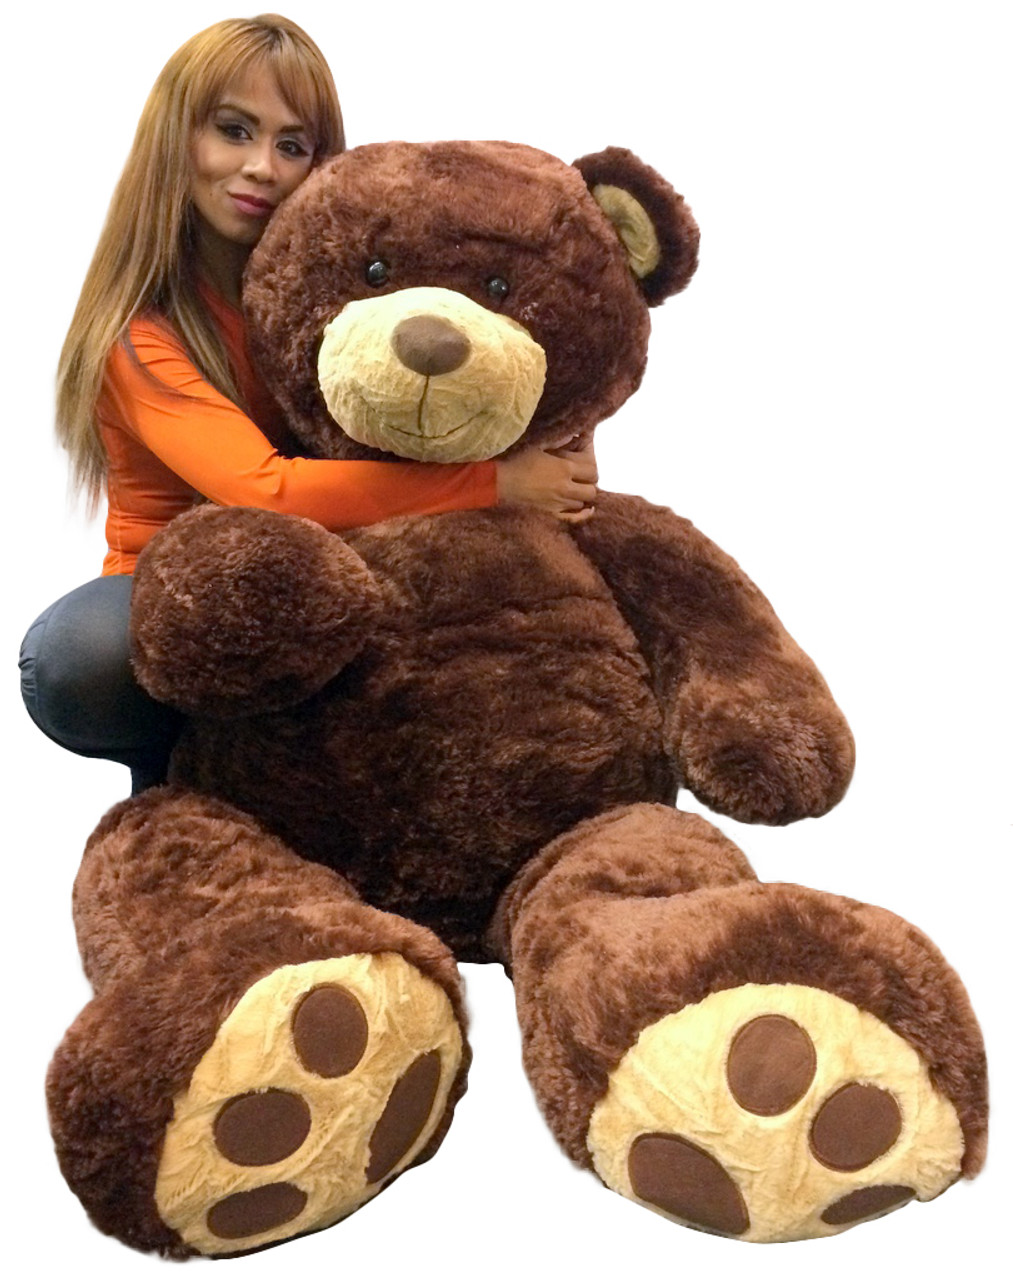 Giant Teddy Bear 5 Feet Tall Superior Quality Big Soft Teddybear Brown 60 Inches 